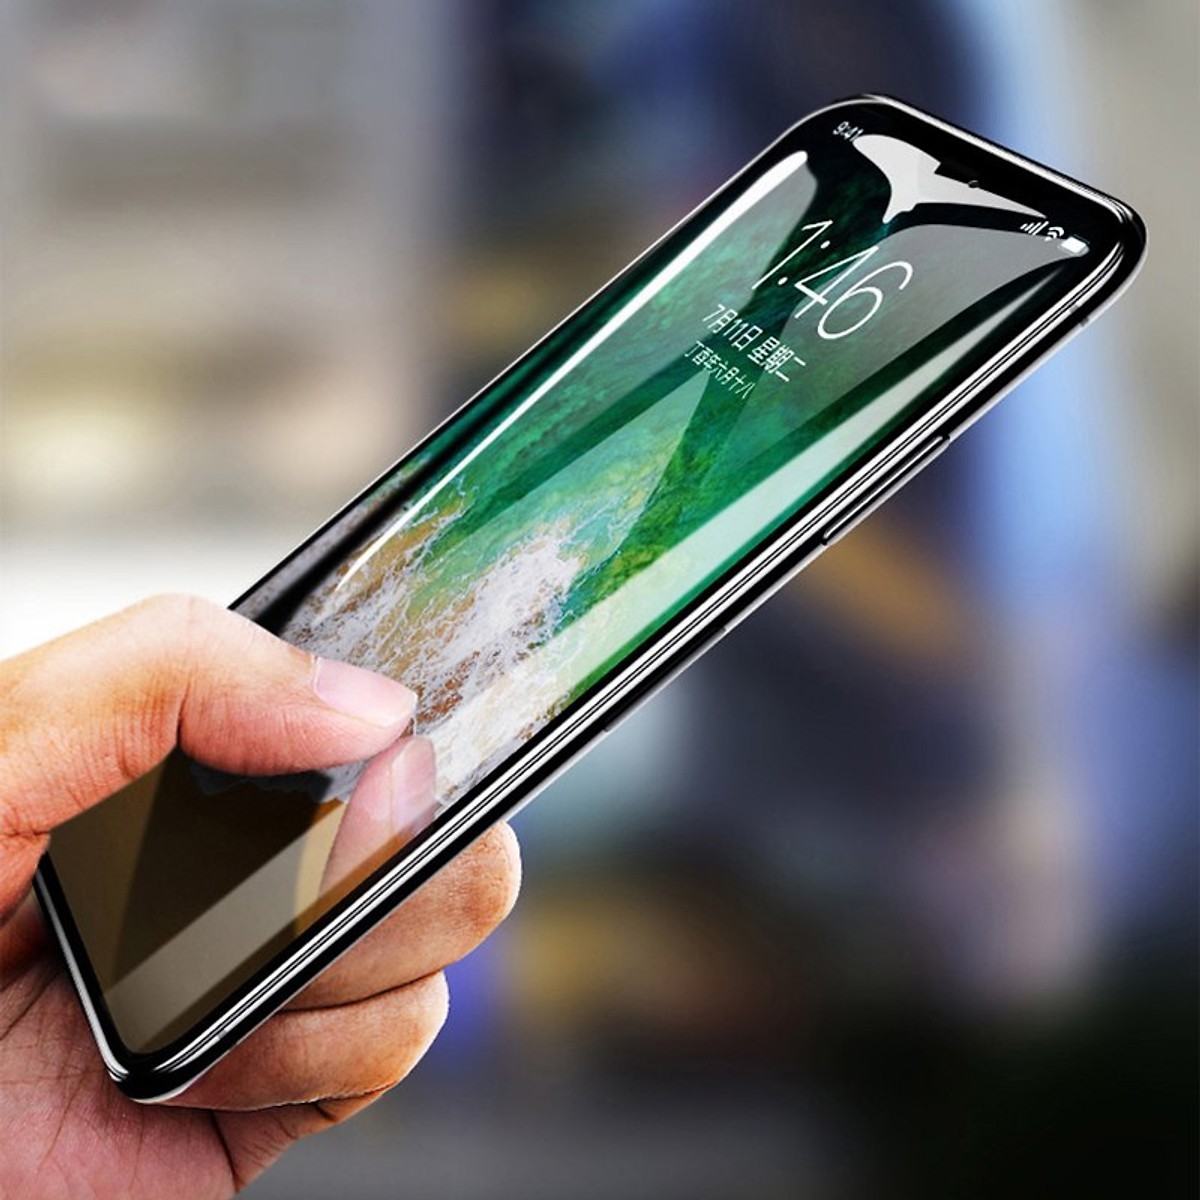 Miếng dán kính cường lực cho iPhone 11 Pro Max (6.5 inch) / iPhone Xs Max hiệu ANANK Nhật Bản (Full 3D, 0.2mm, phủ nano, chống tia cực tím, Mặt kính AGGC) - Hàng nhập khẩu